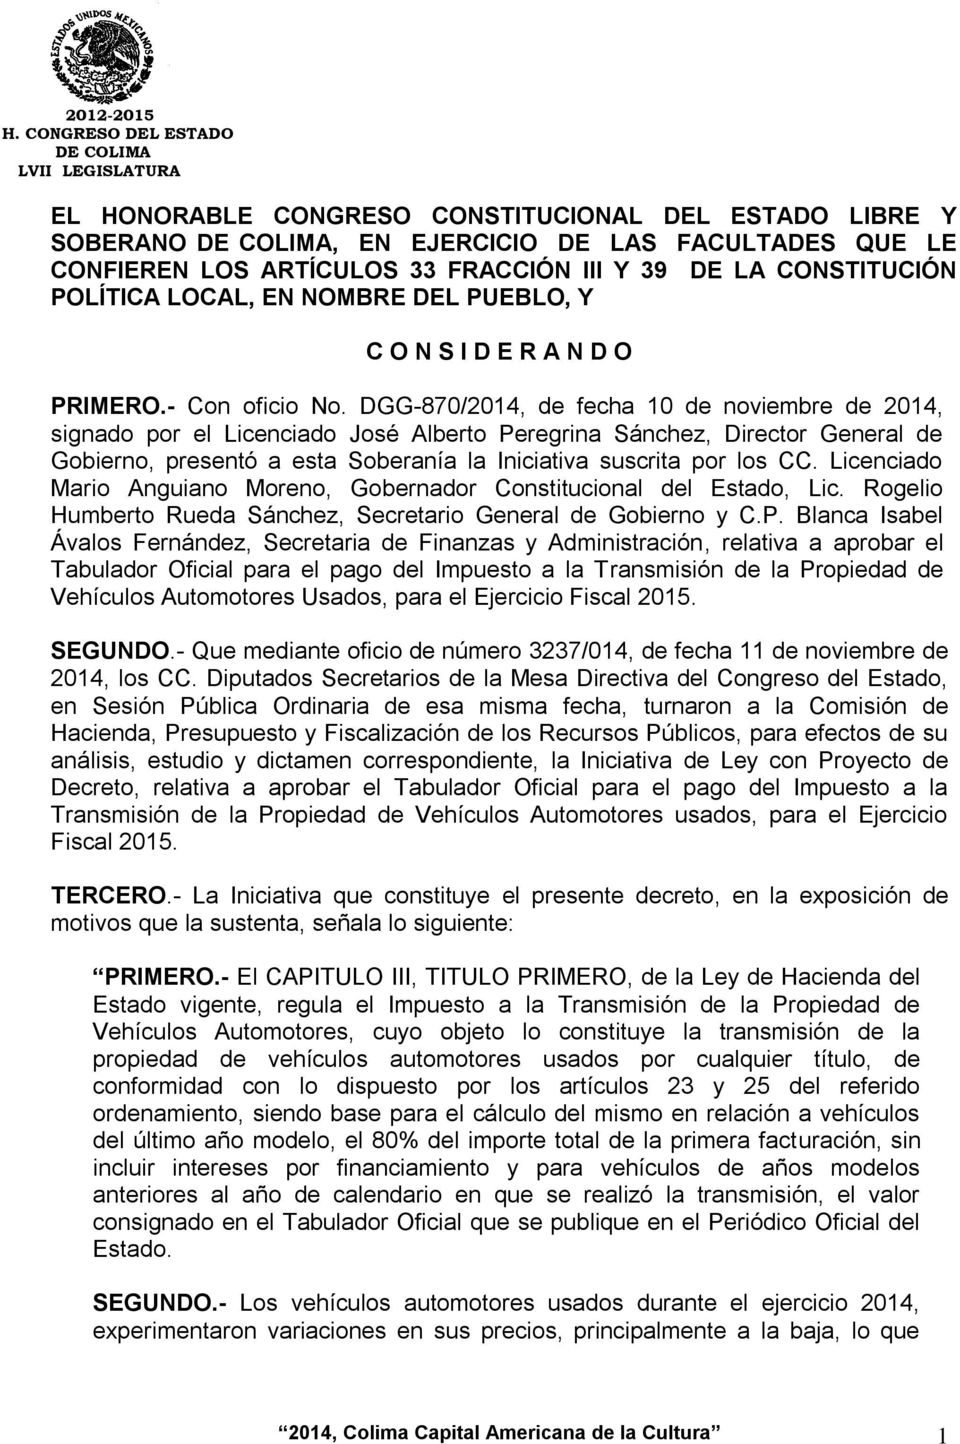 DGG-870/2014, de fecha 10 de noviembre de 2014, signado por el Licenciado José Alberto Peregrina Sánchez, Director General de Gobierno, presentó a esta Soberanía la Iniciativa suscrita por los CC.